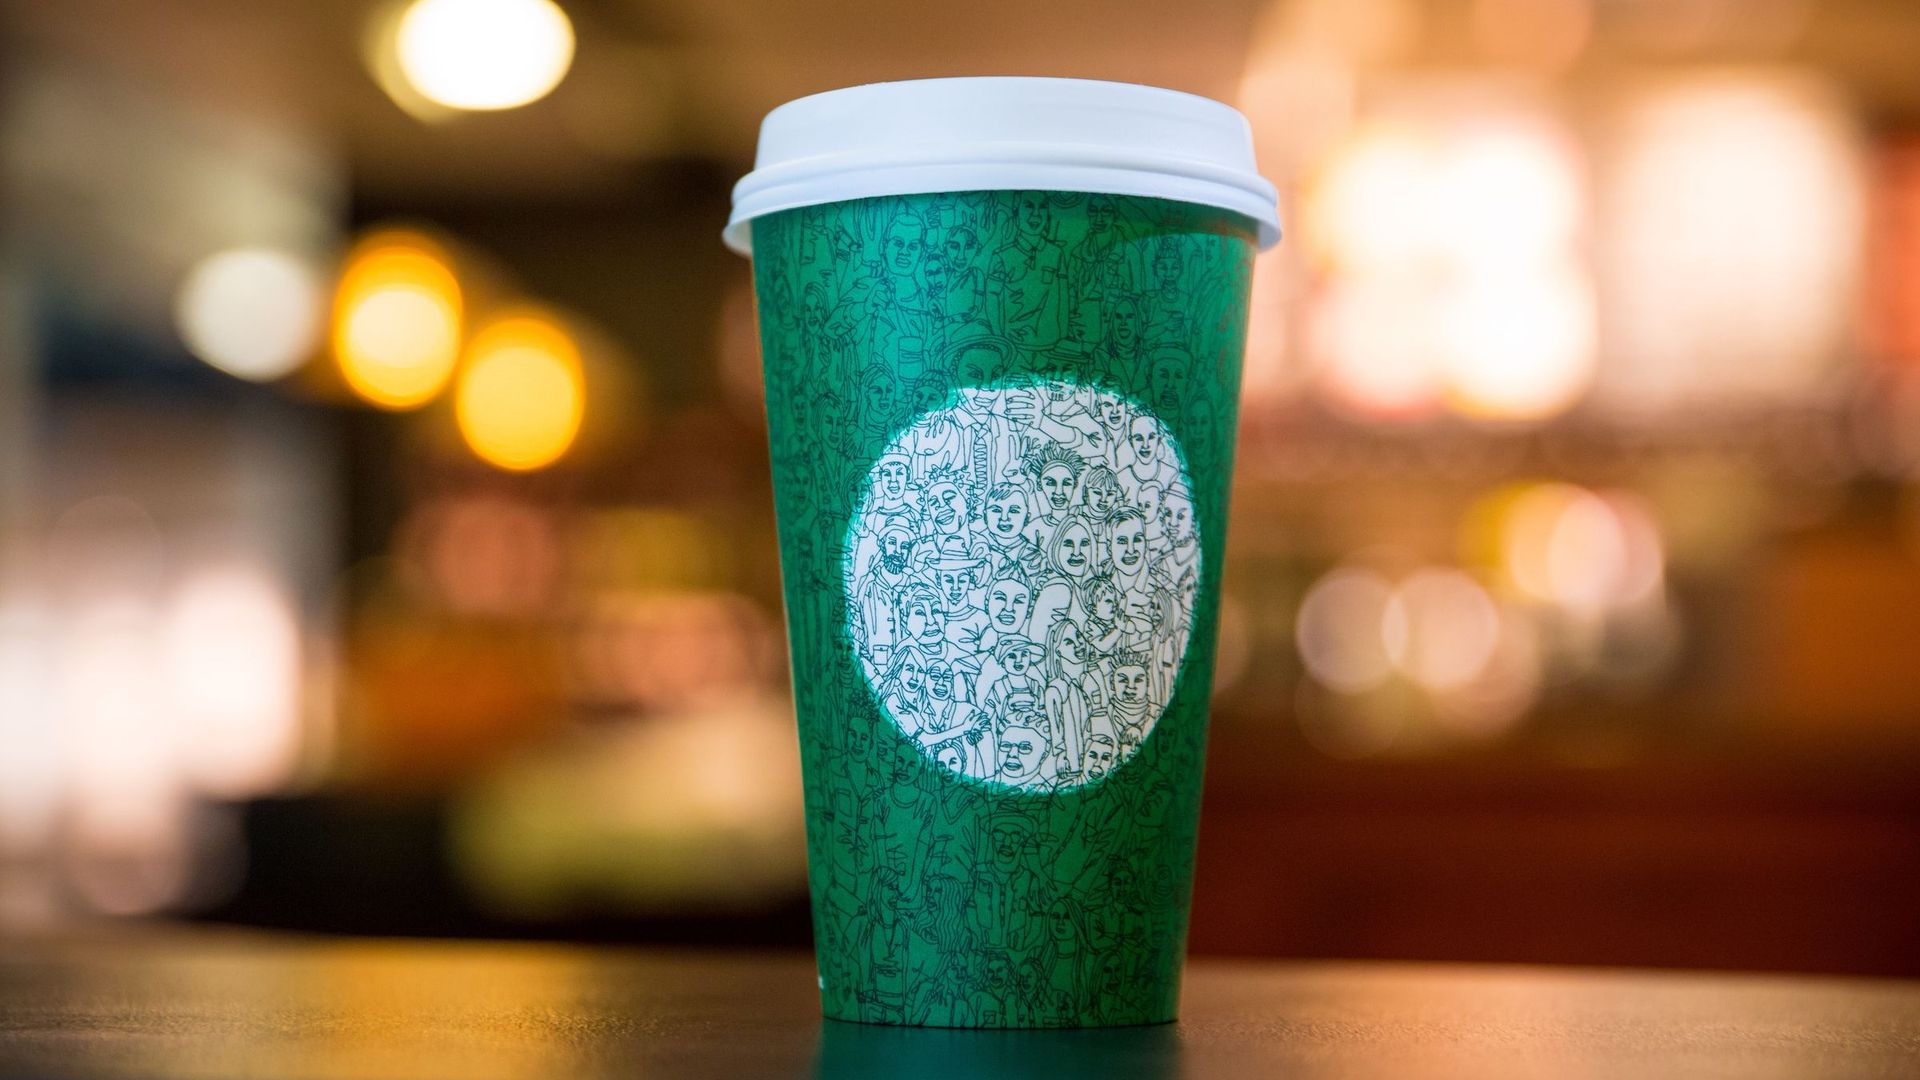 La chaîne américaine de cafés met régulièrement en avant ses efforts en termes de recyclage, réduction des déchets et d'empreinte carbone, ainsi que d'achat responsable de ses thés et cafés.